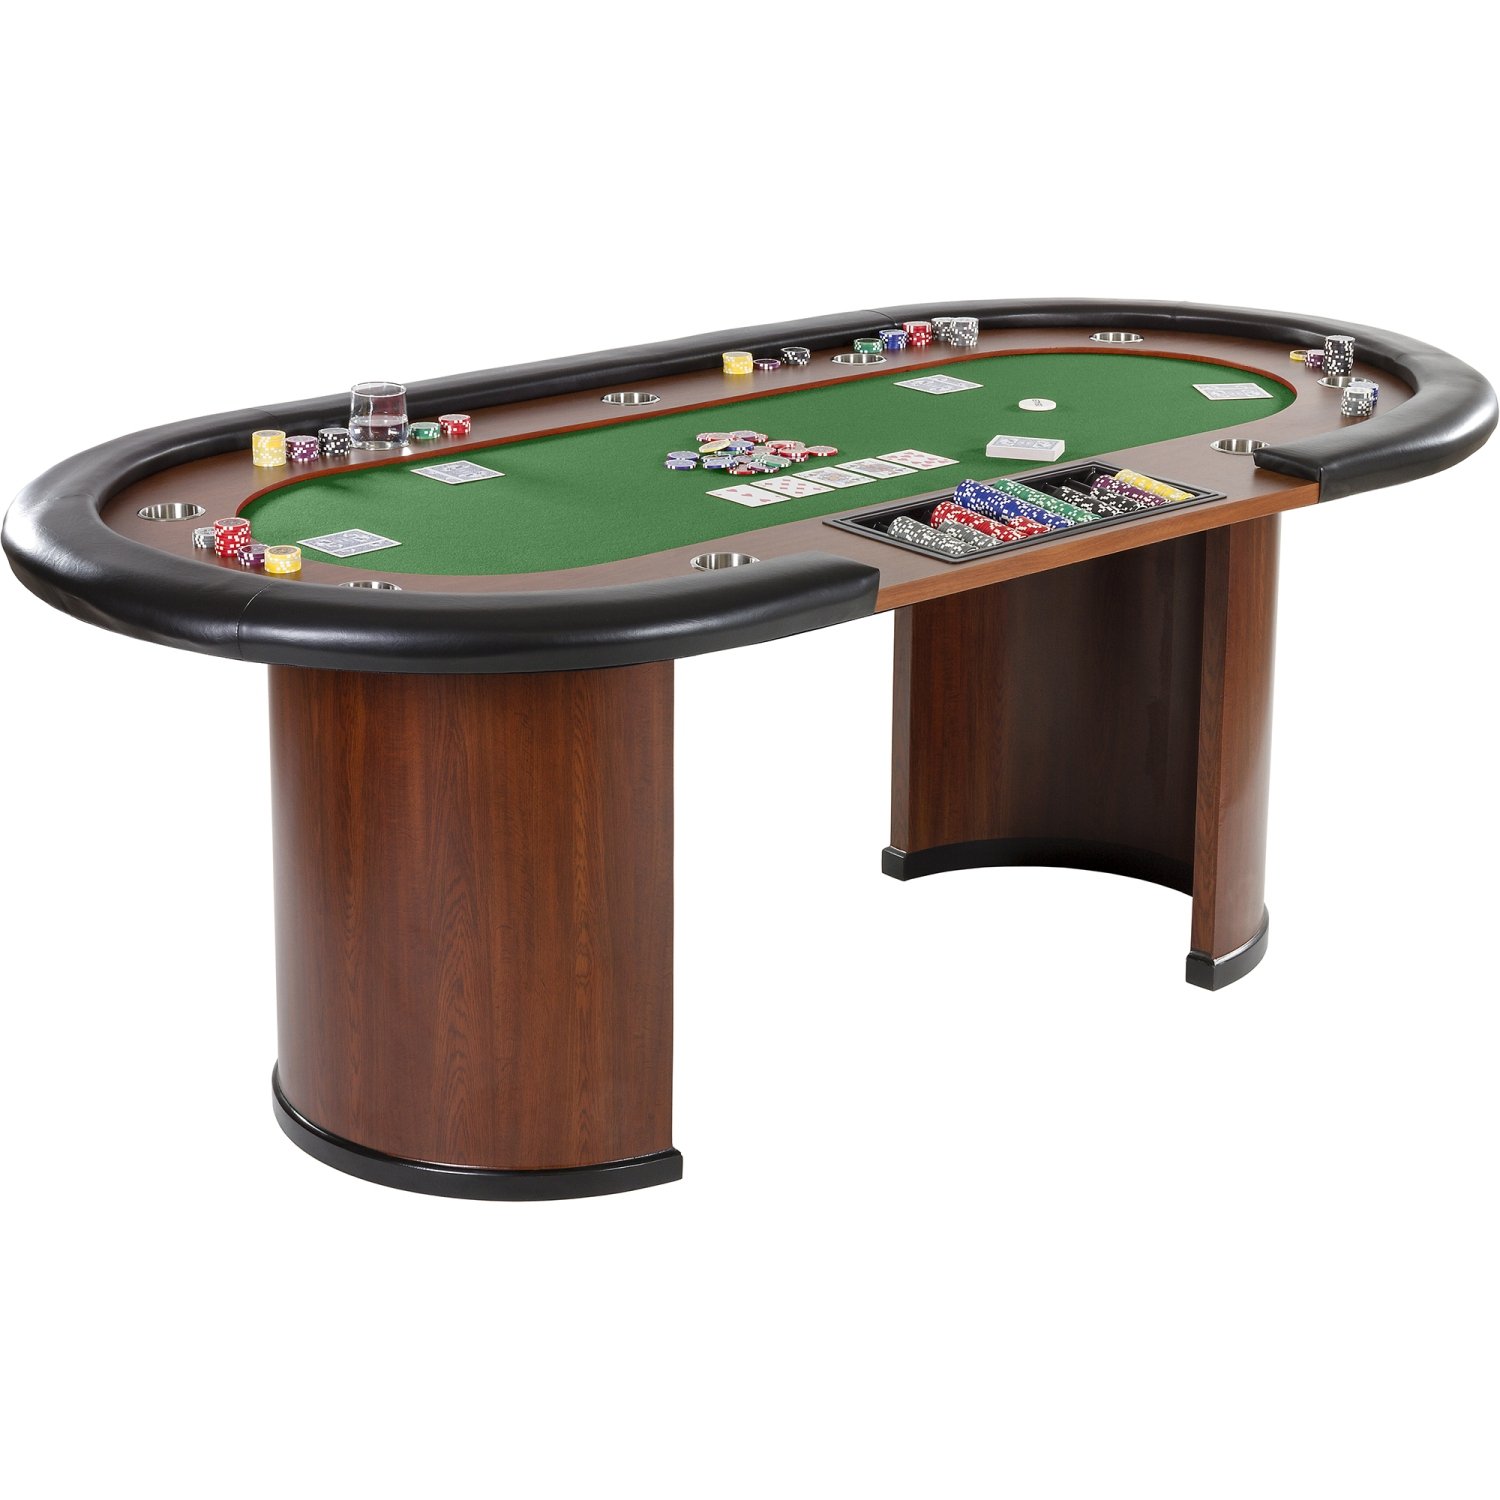 GAMES PLANET Pokertisch „Royal Flush“, 213 x 106 x75 cm, Farbwahl, Gewicht 58kg, 9 Getränkehalter, gepolsterte Armauflage, grün